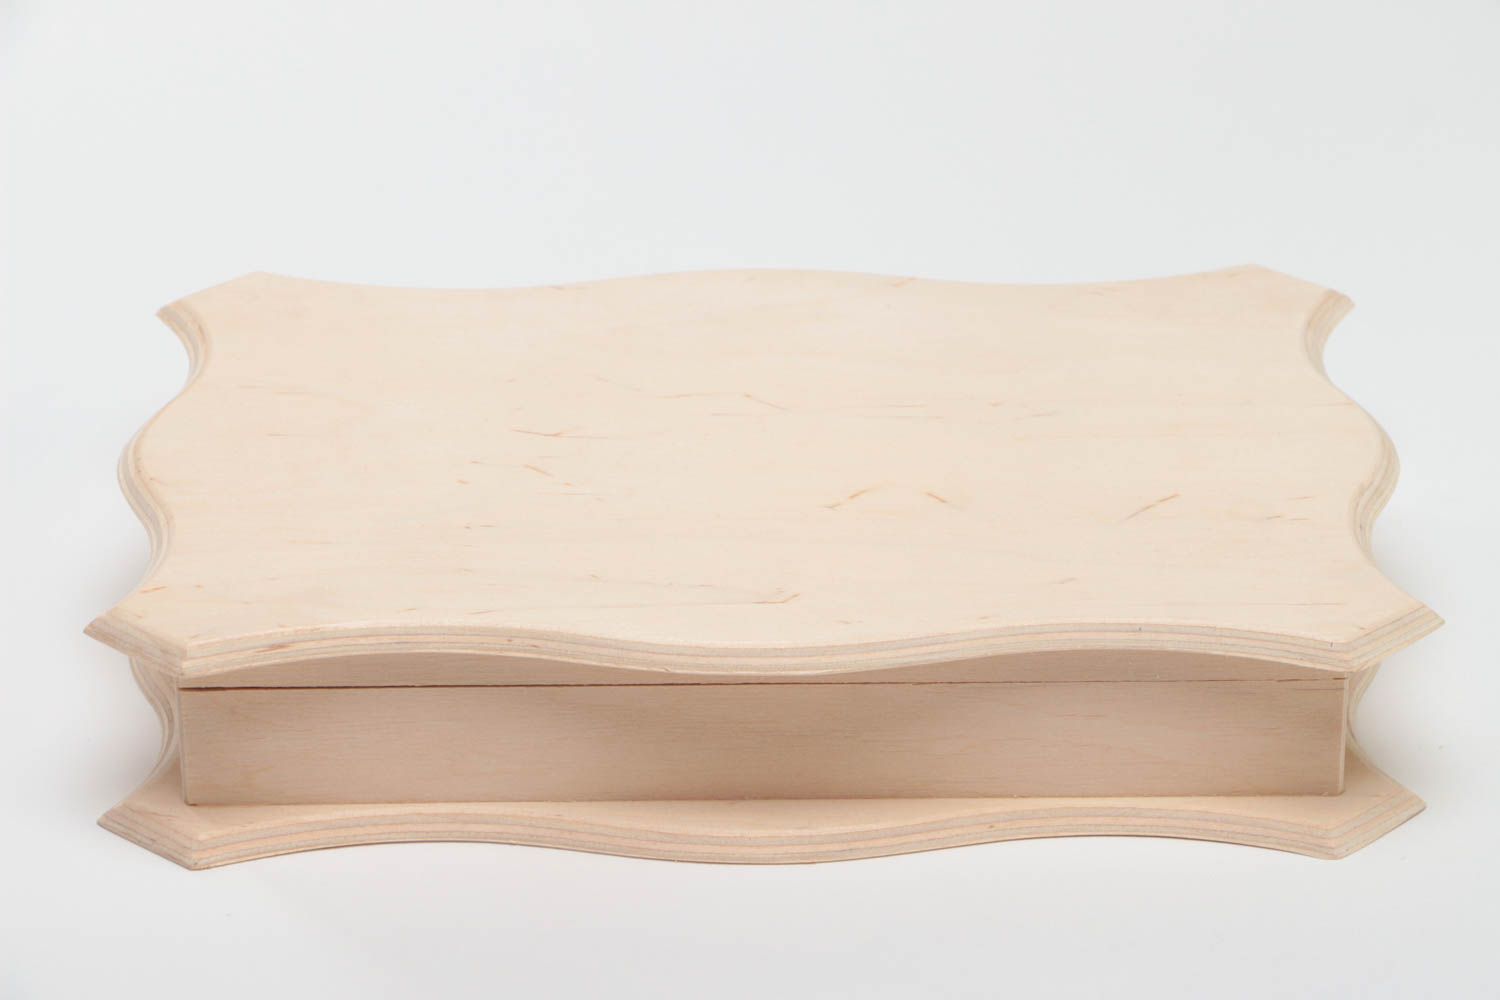 Boîte rectangulaire en bois brut pour serviettage ou à peindre faite main photo 2